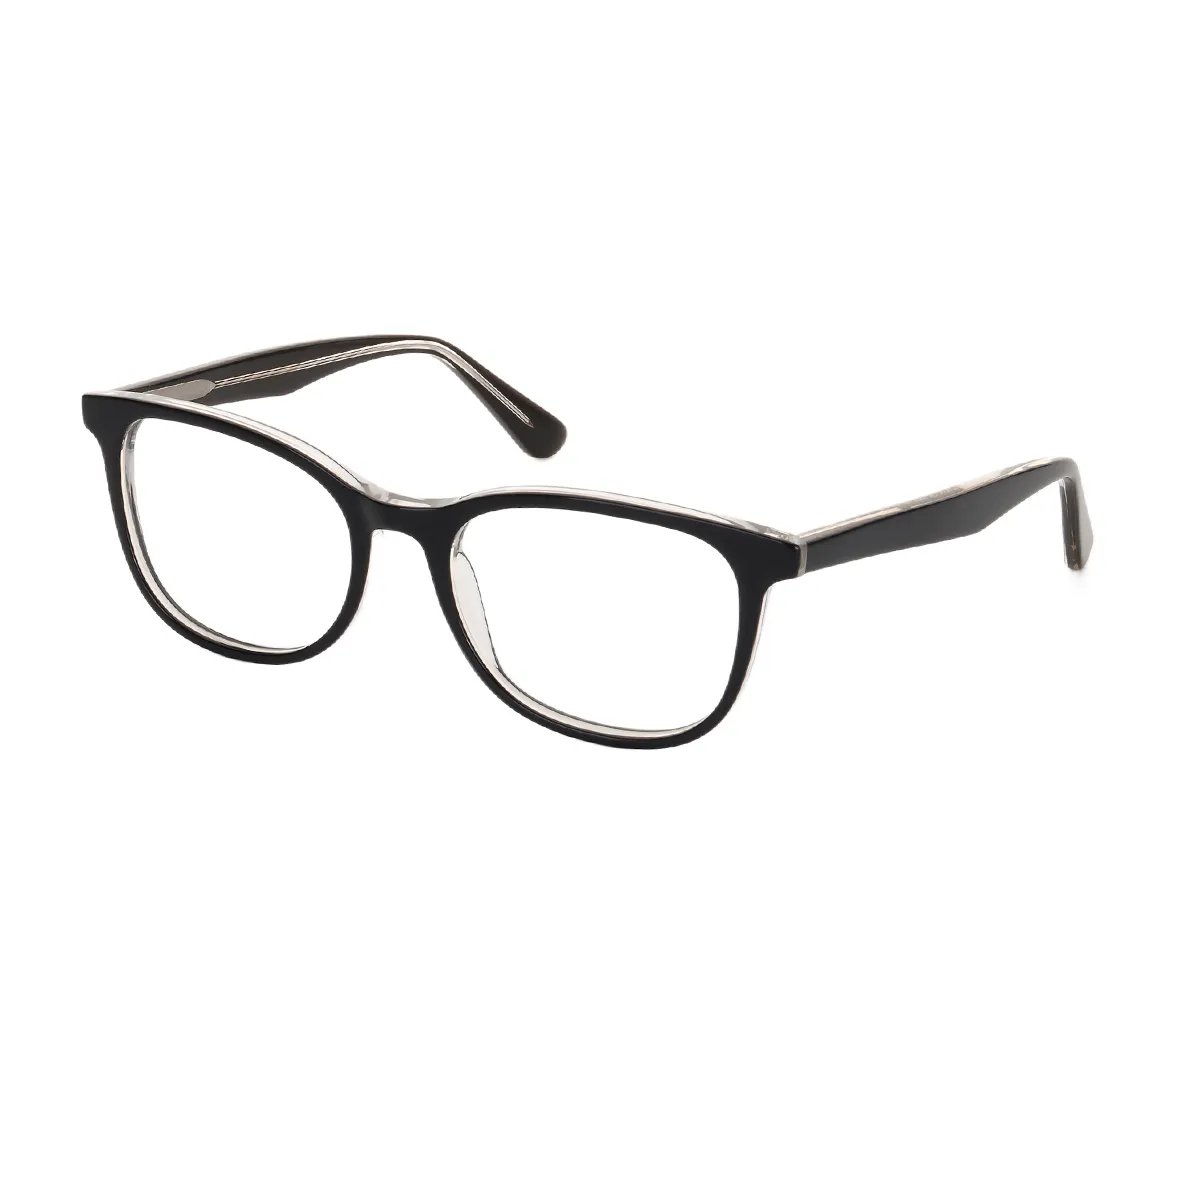 Ring - Oval Black Glasses for Men & Women